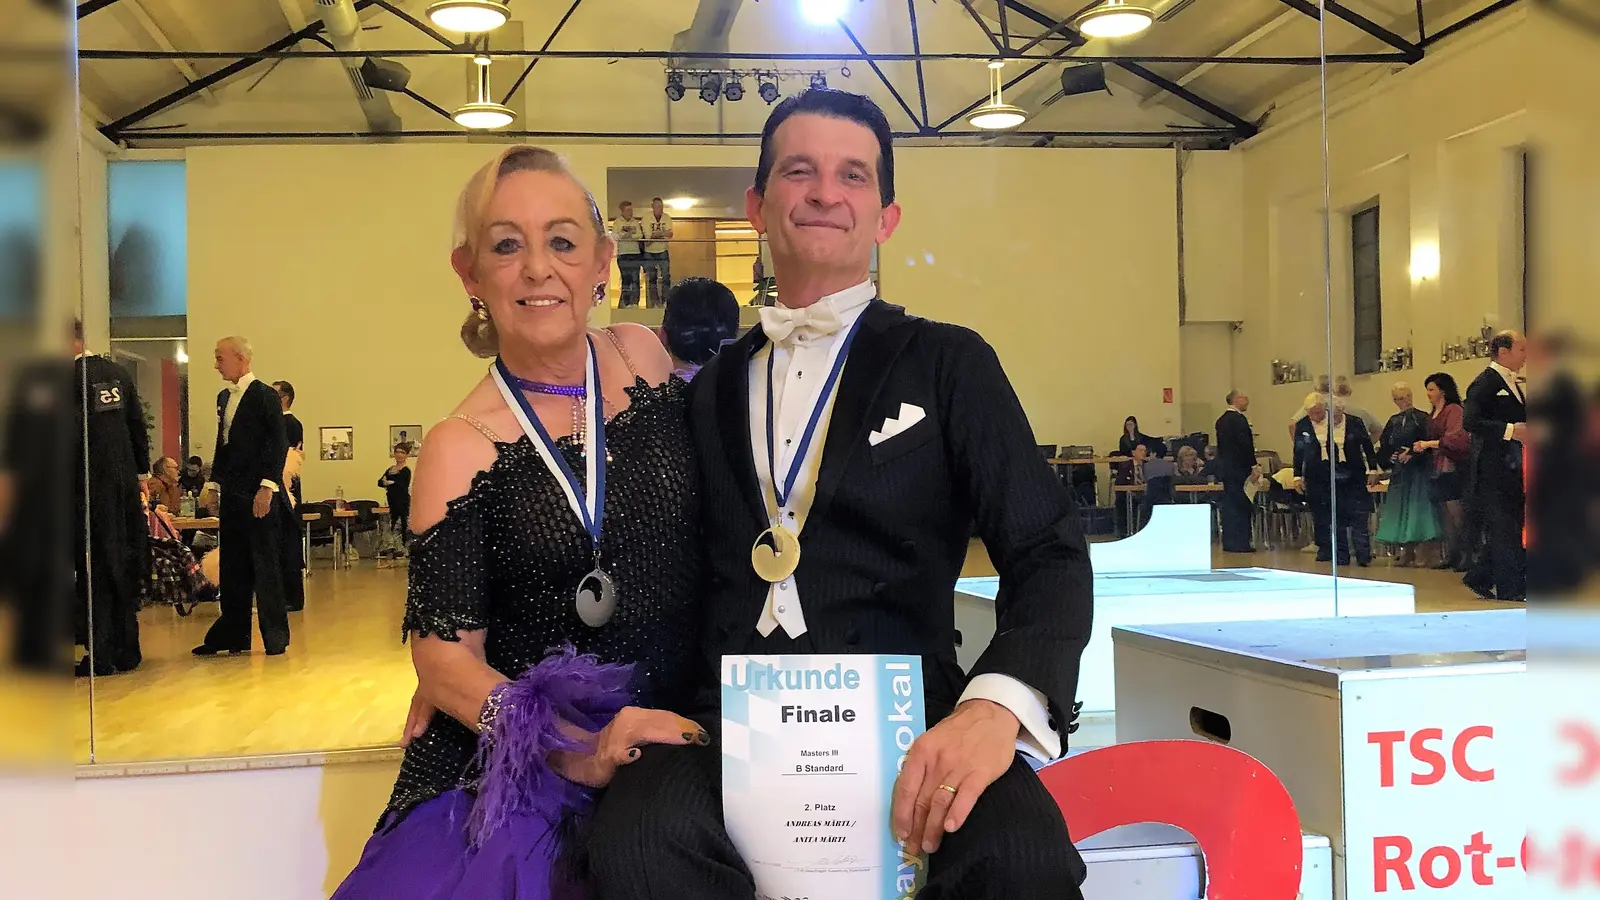 Anita und Andreas Märtl, die erfolgreichen Tanzsportler des BGC.  (Foto: Blau Gold Casino München e.V.)